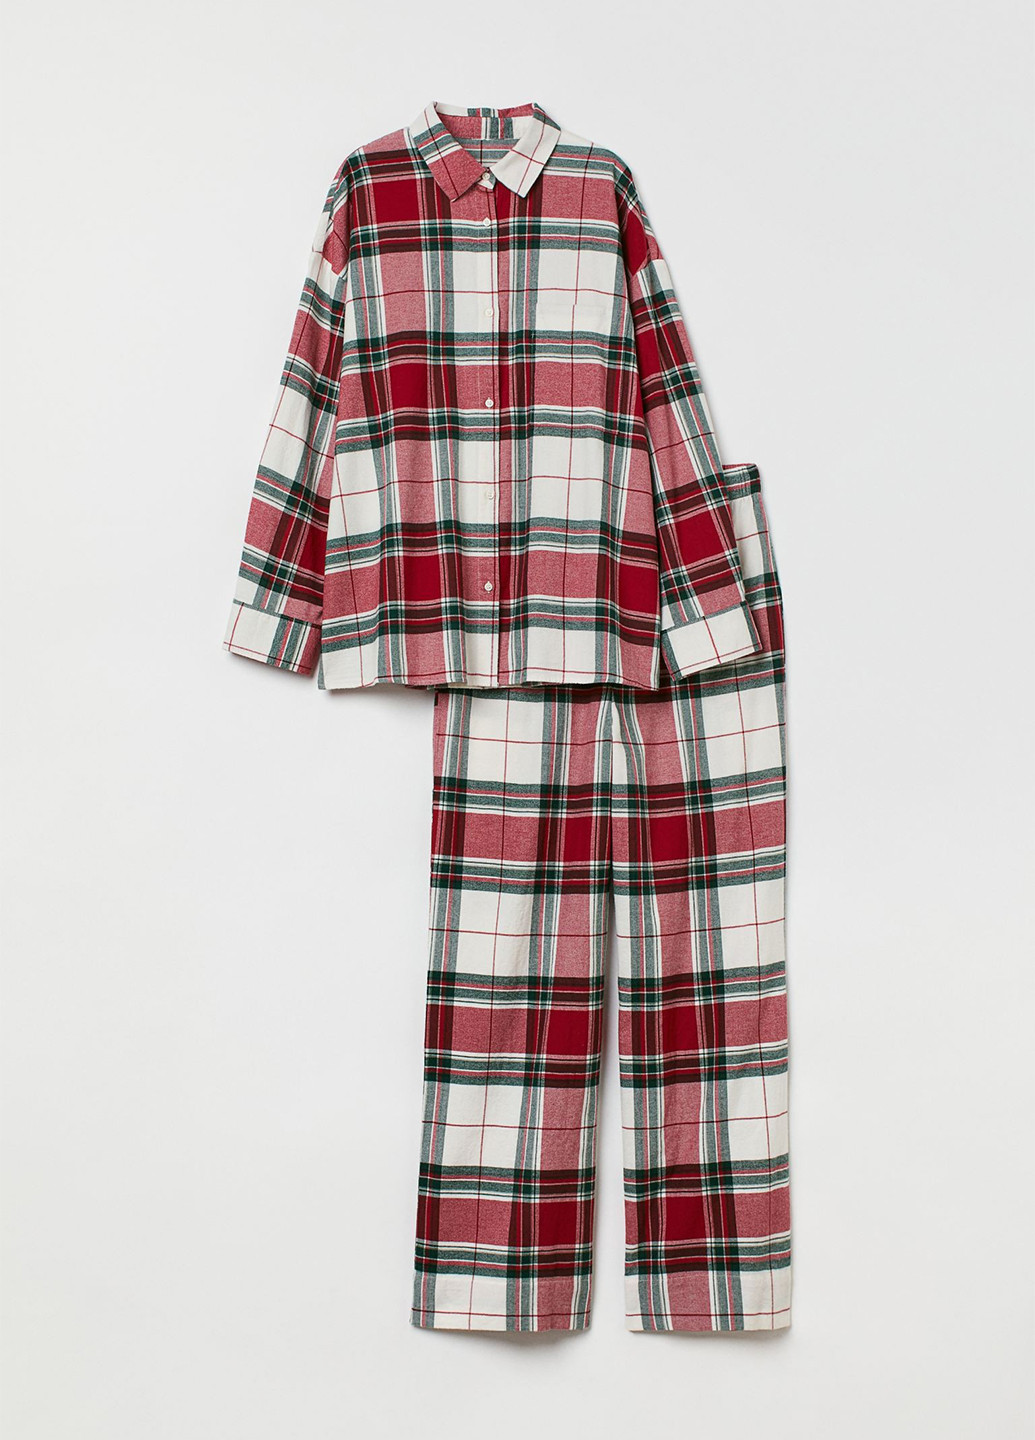 Комбинированная всесезон пижама (рубашка, брюки) рубашка + брюки H&M